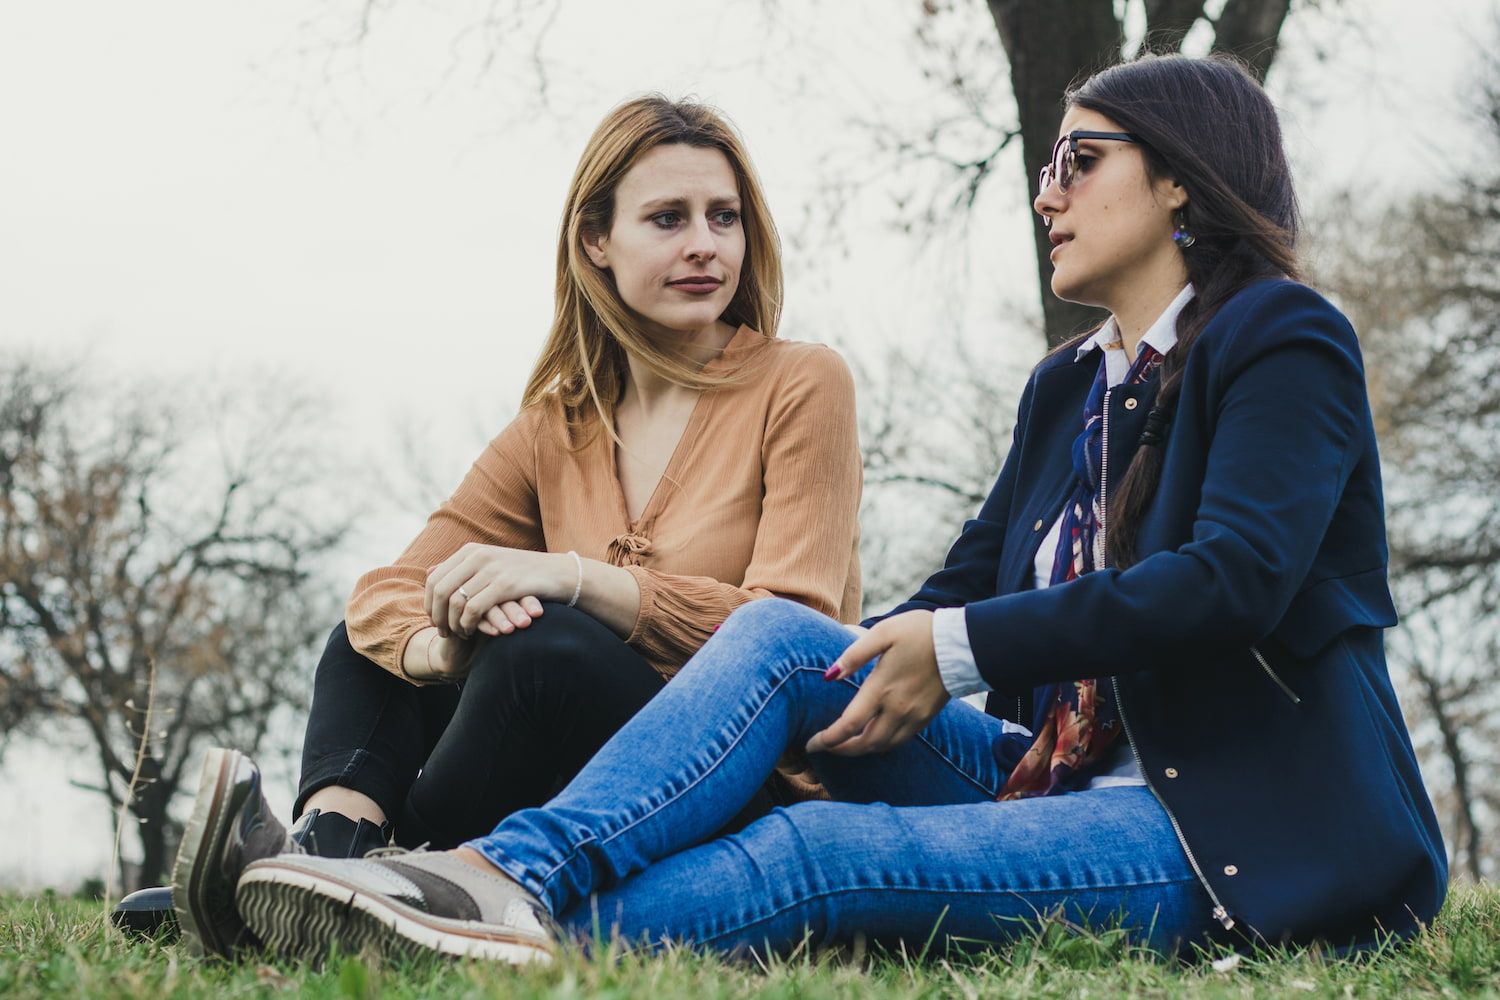 Two women talking in a park